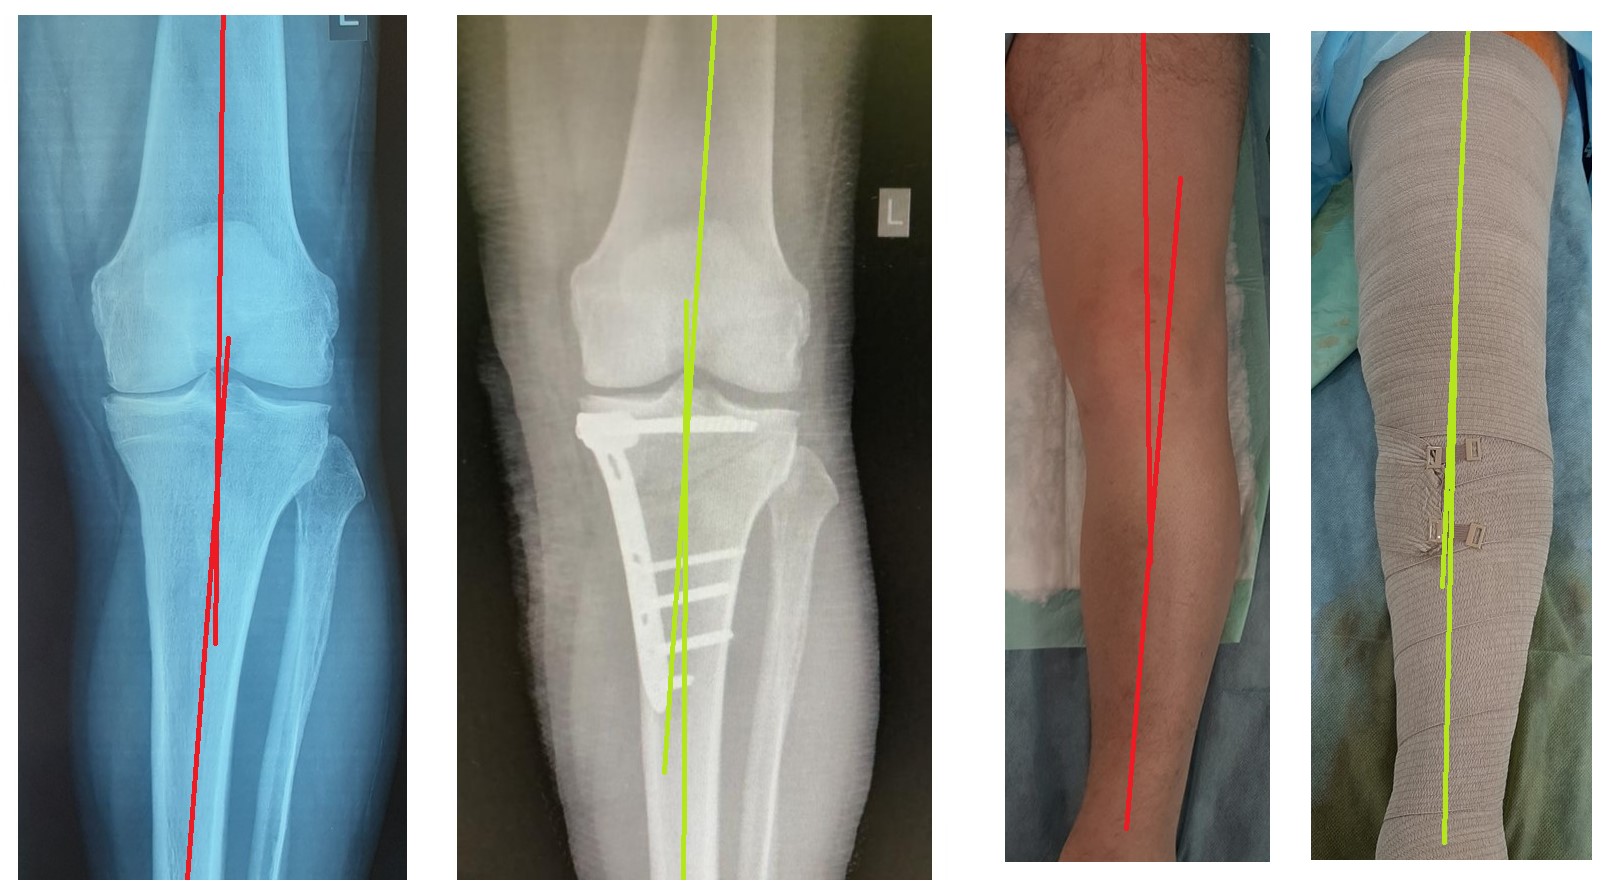 лечение артроза коленного сустава, корригирующая остеотомия